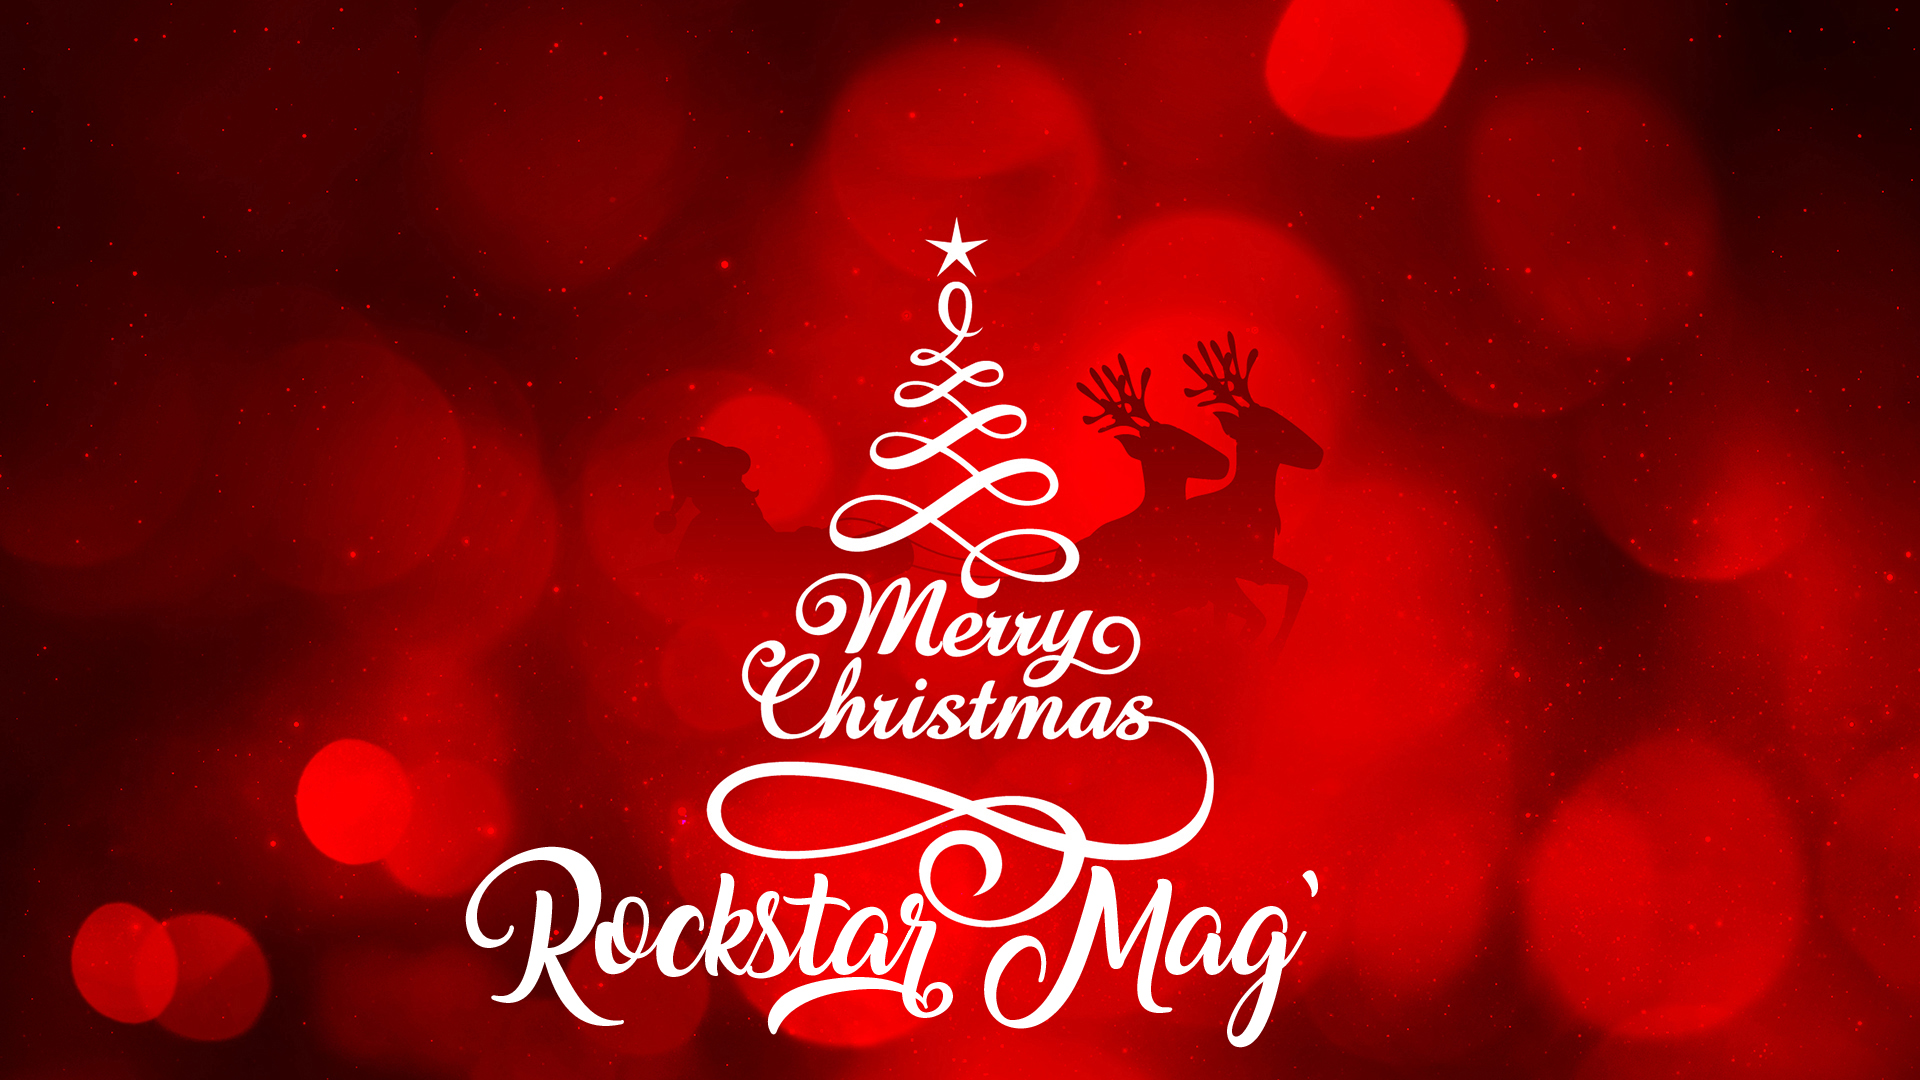 Joyeux Noël 2017 Rockstar Mag